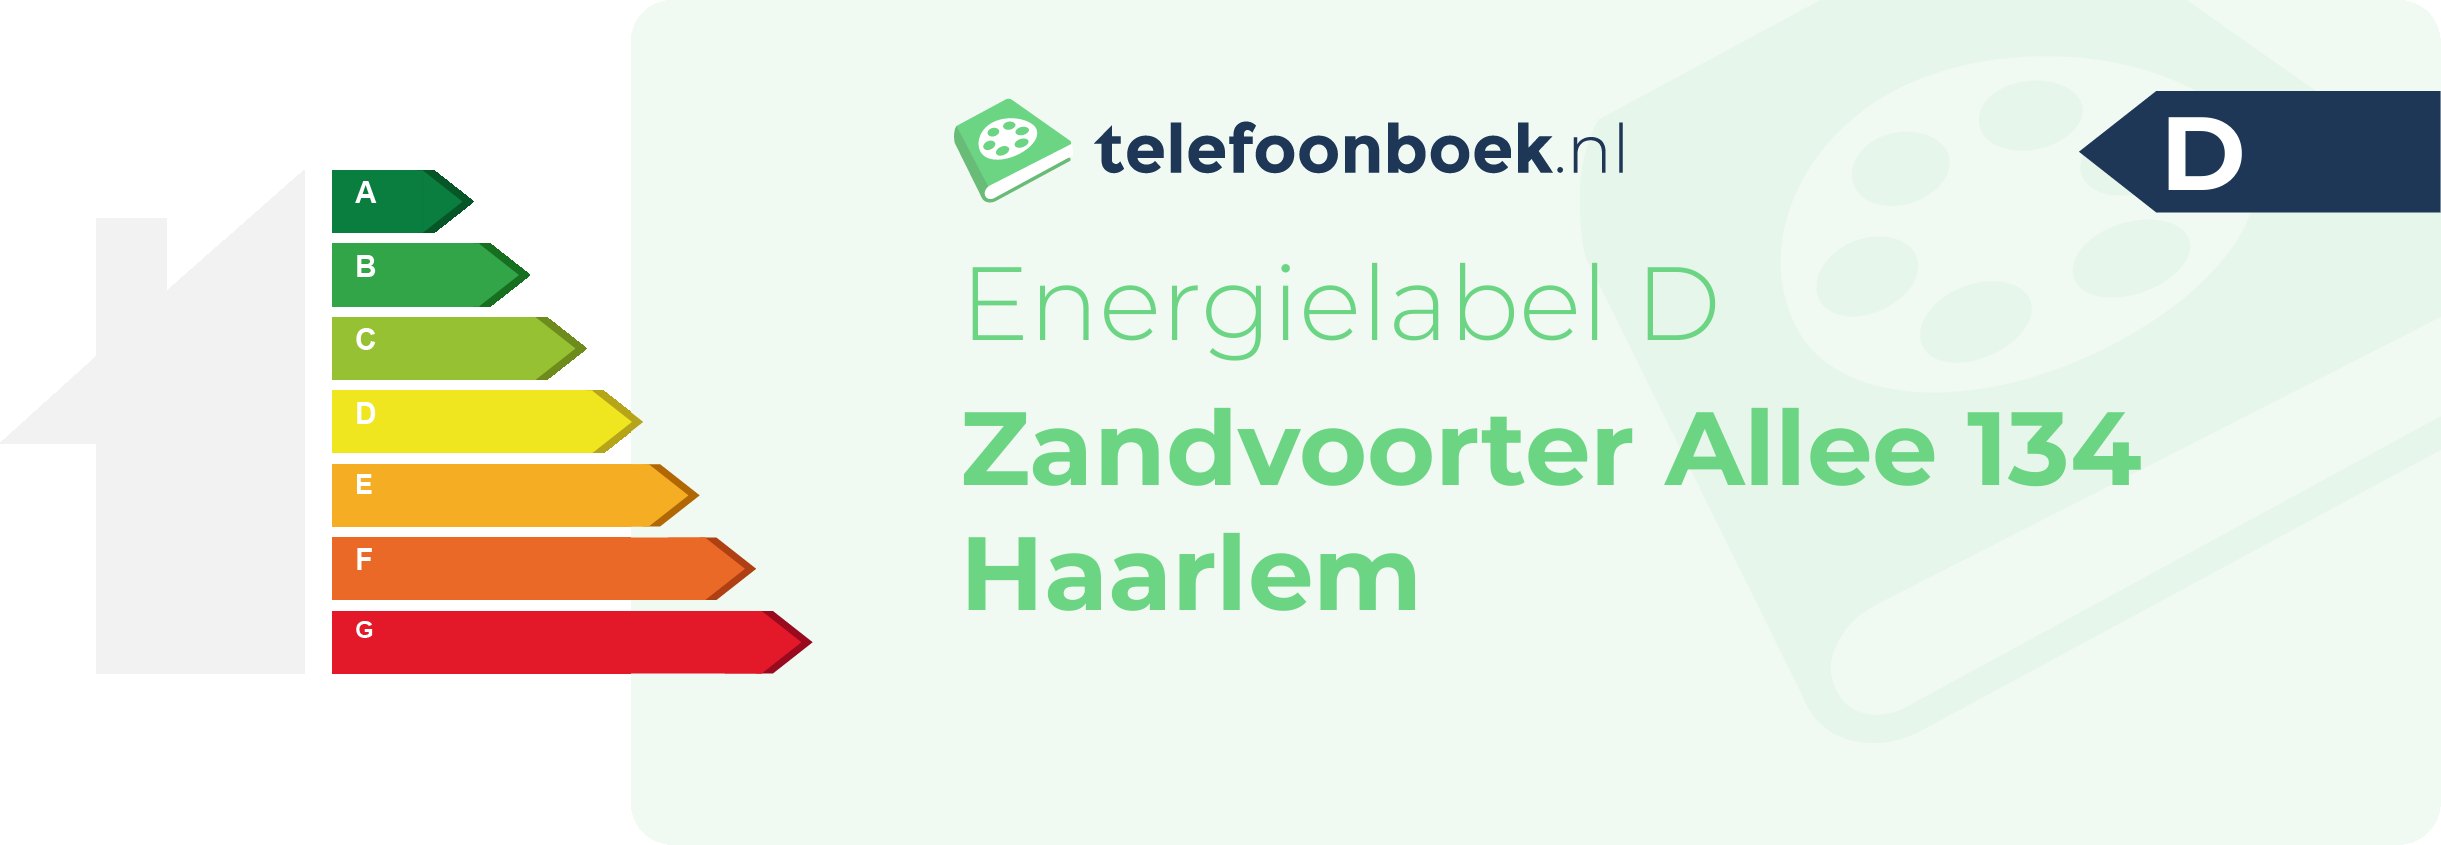 Energielabel Zandvoorter Allee 134 Haarlem